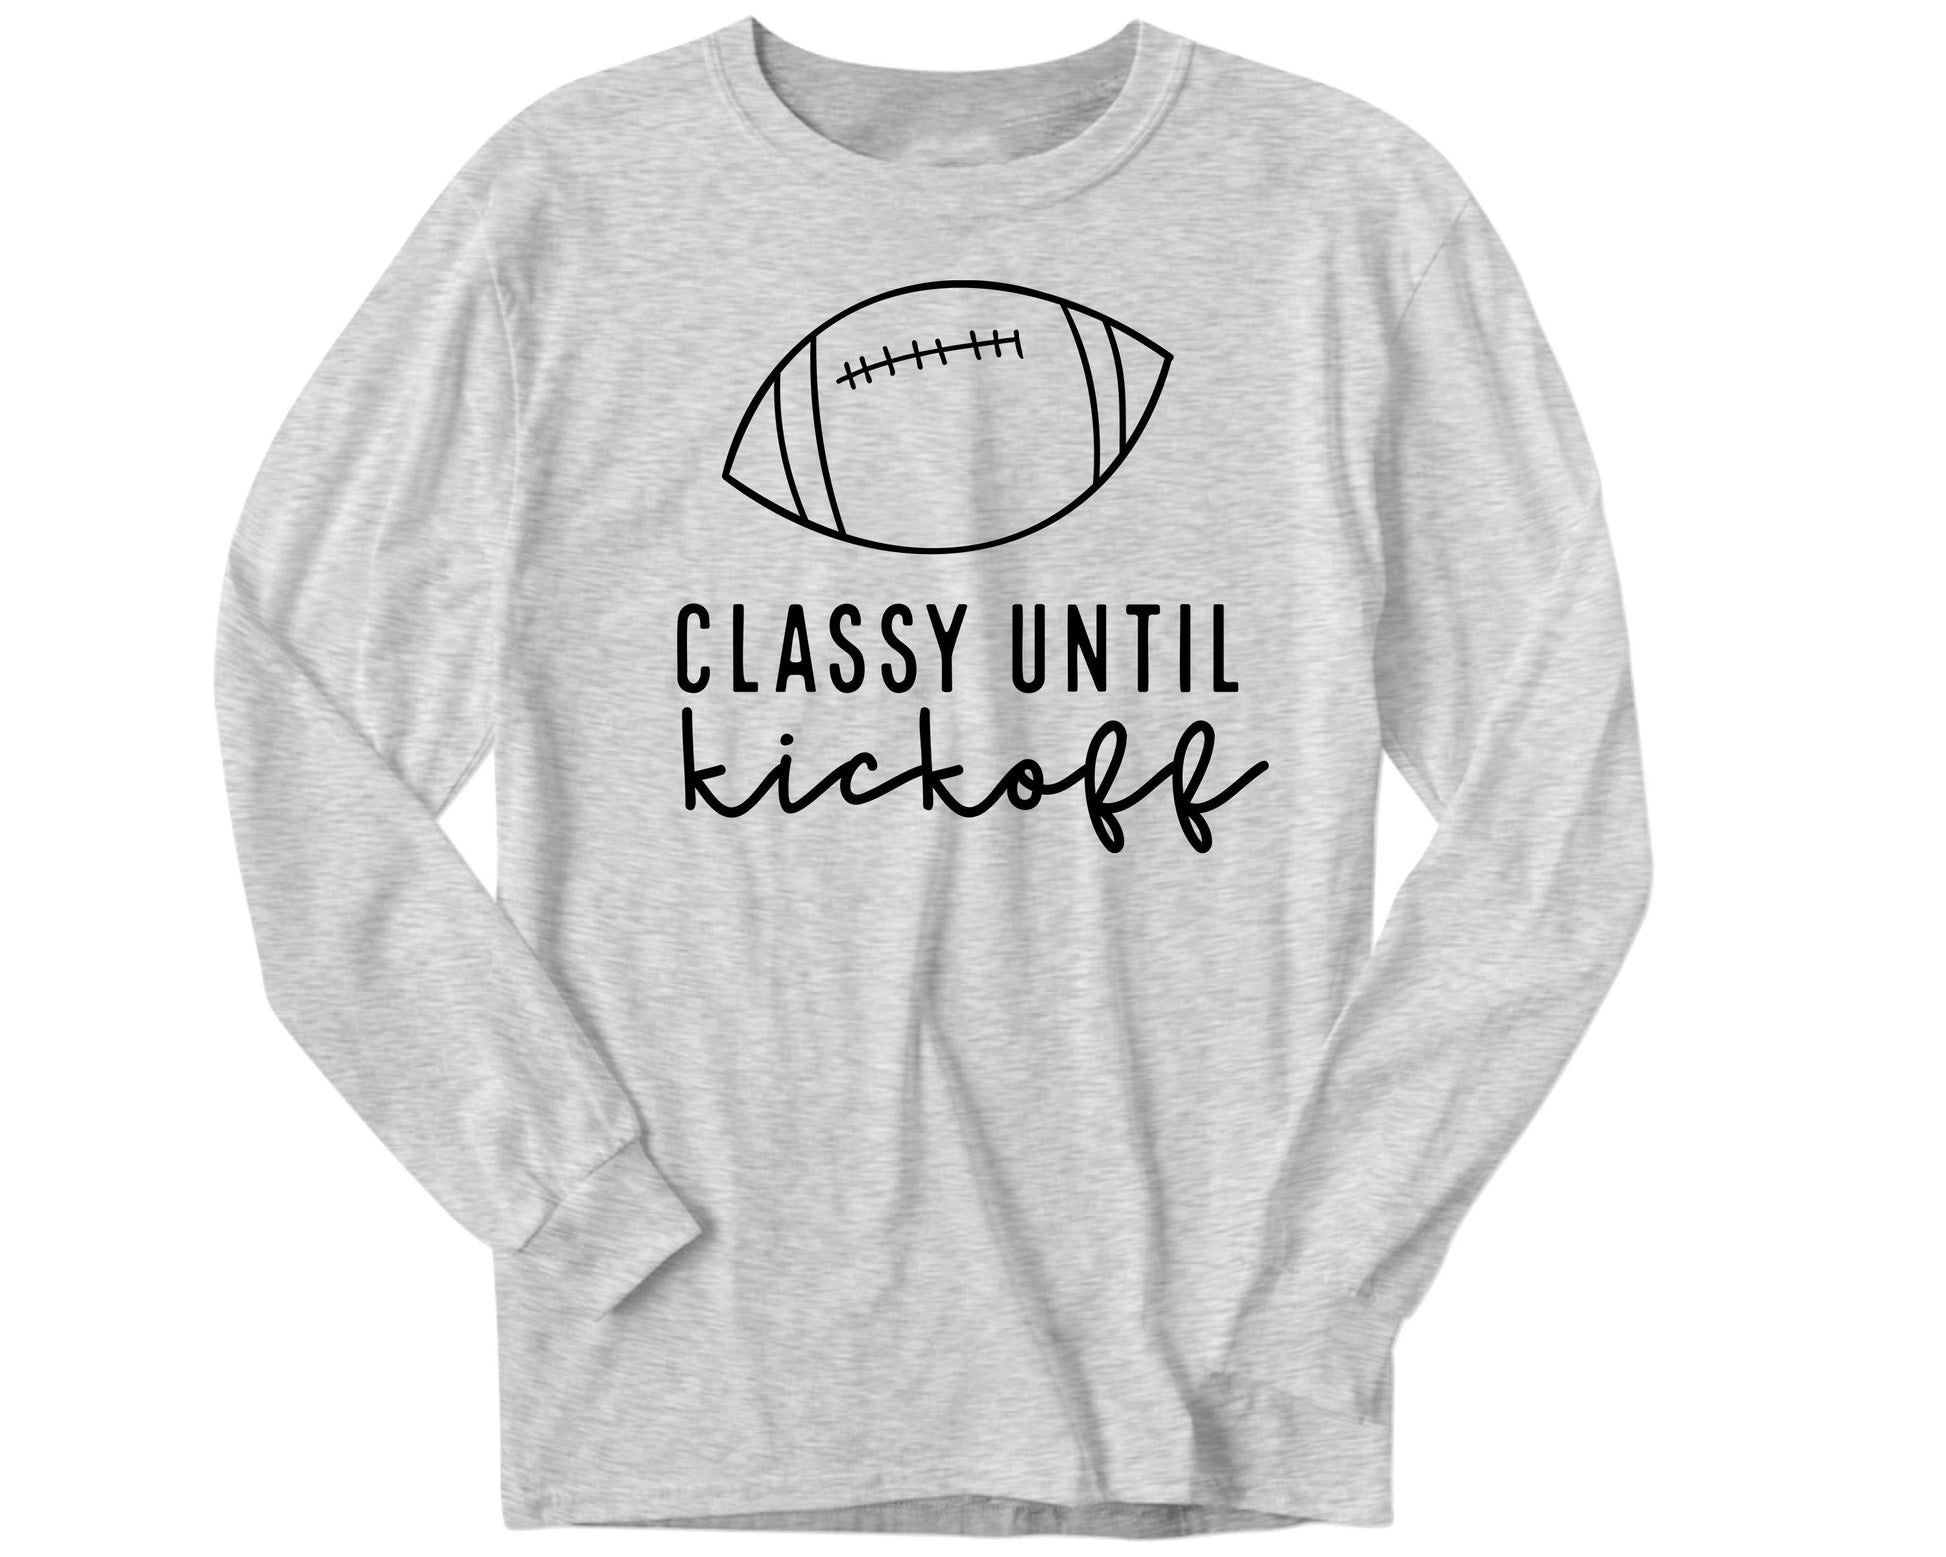 Classy Until Kickoff - Women's shirts -  Rustic Cuts